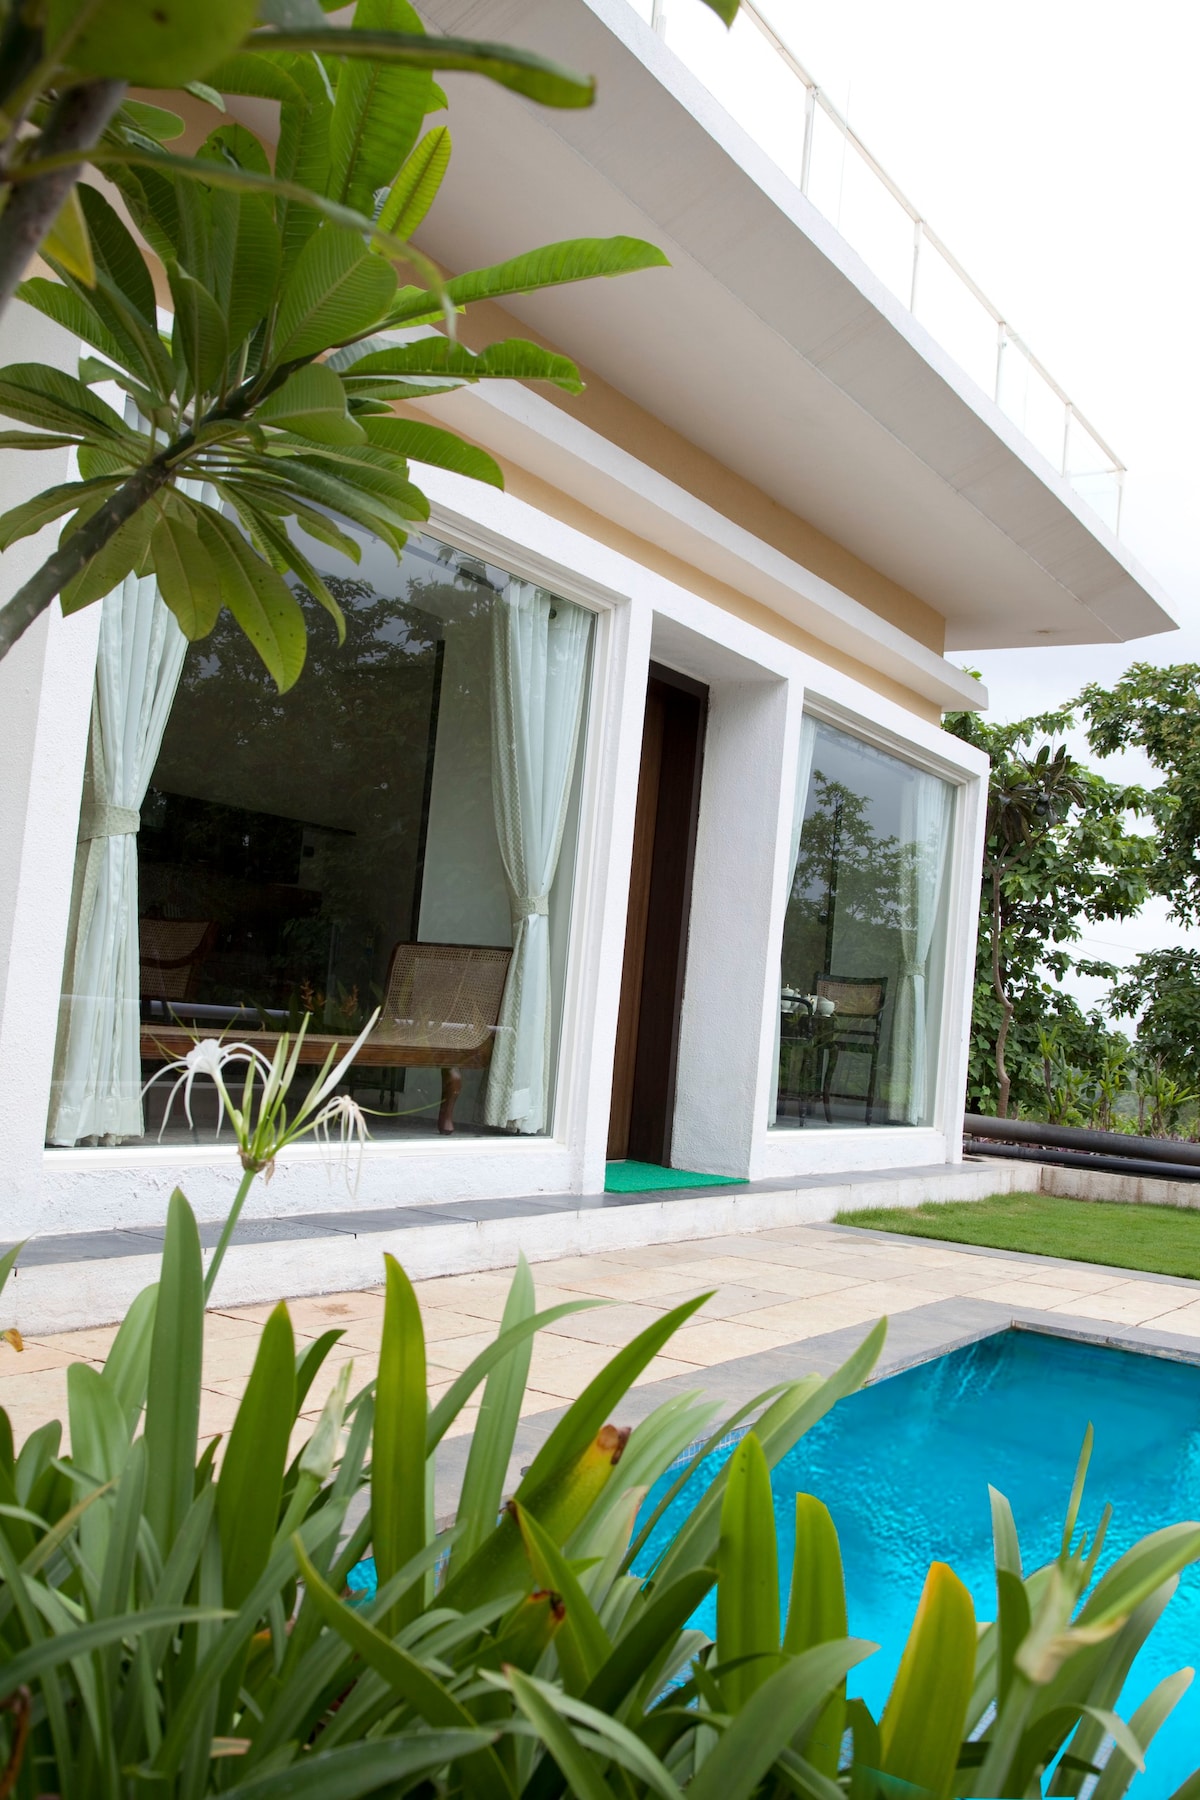 Lotus 87 Villa: Pool Paradise! Best Deal In Karjat